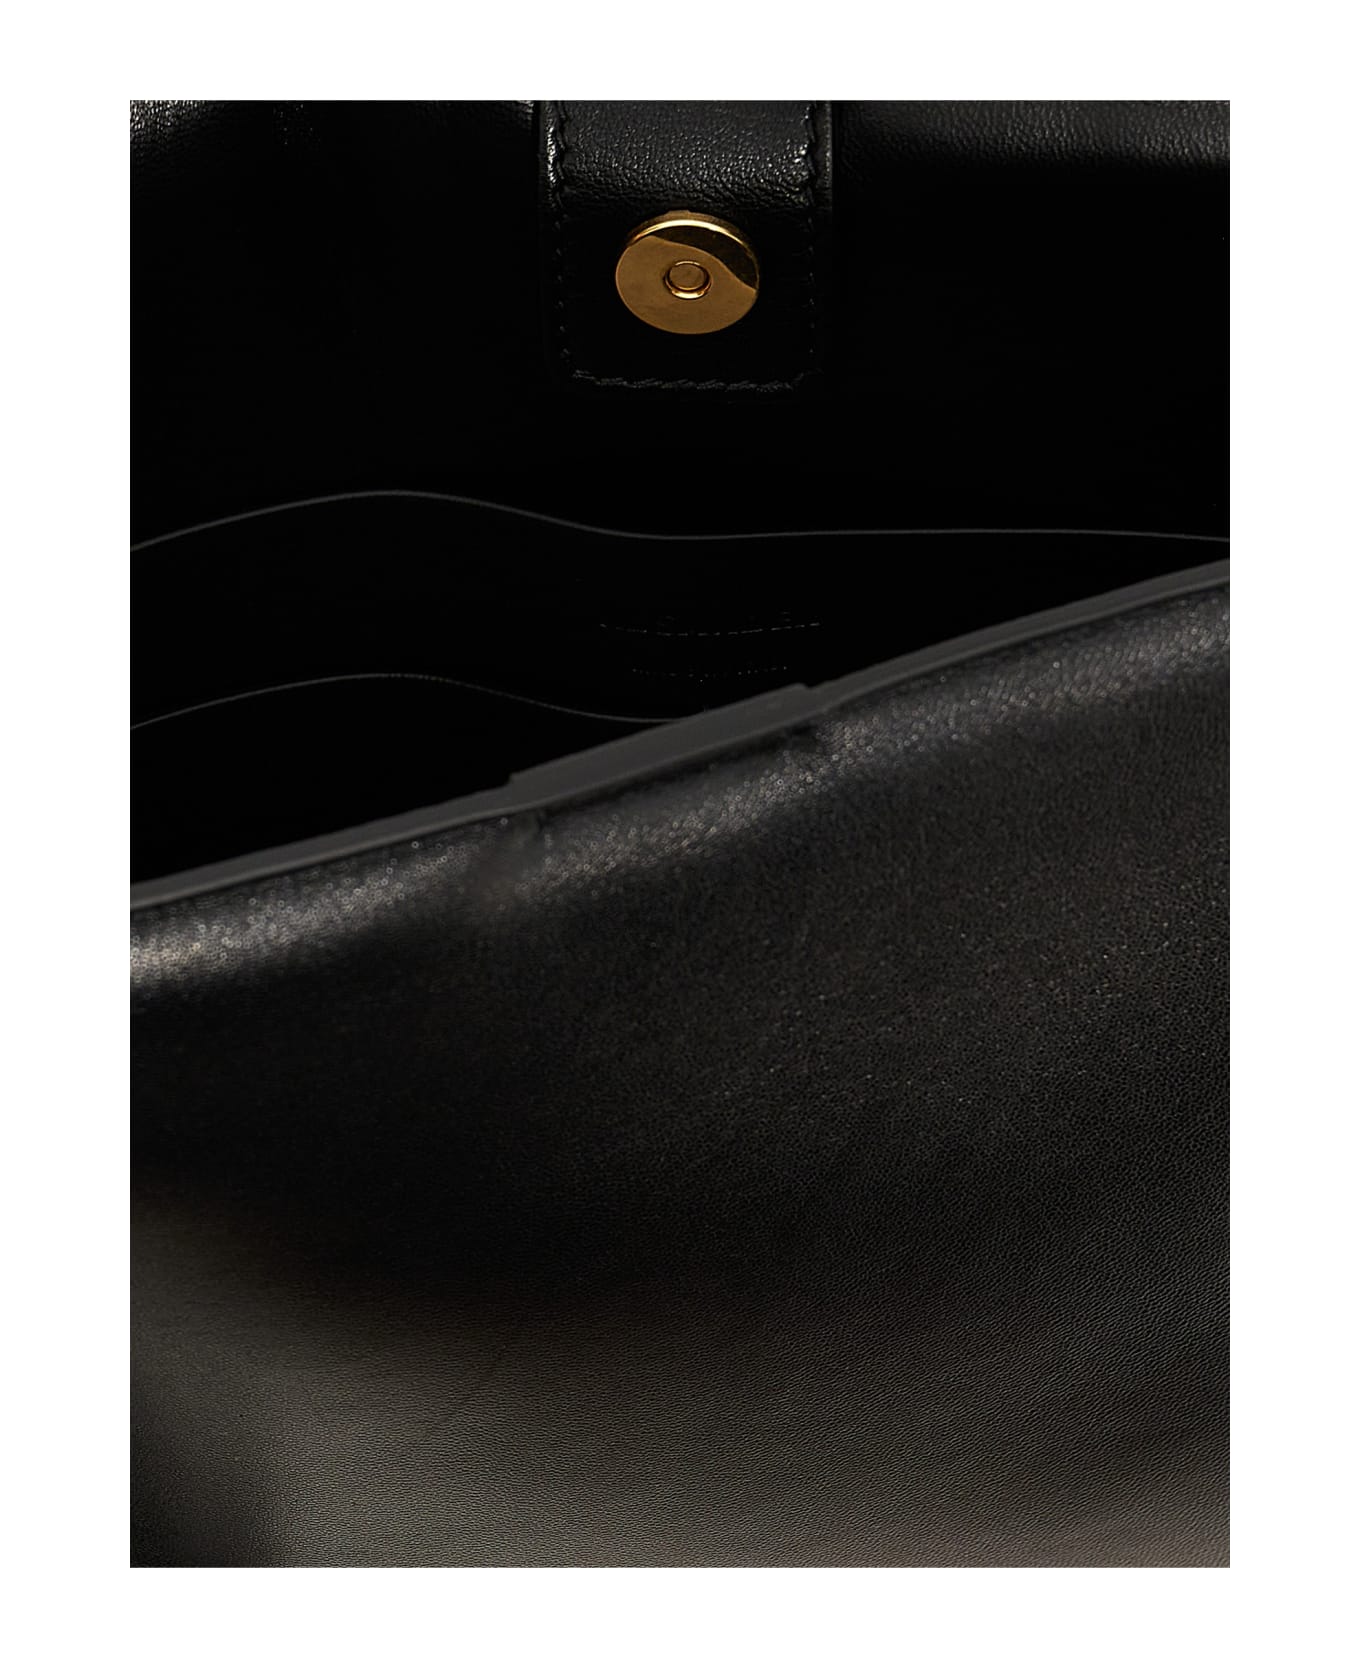 Jil Sander Leather Shoulder Strap - Black   クラッチバッグ